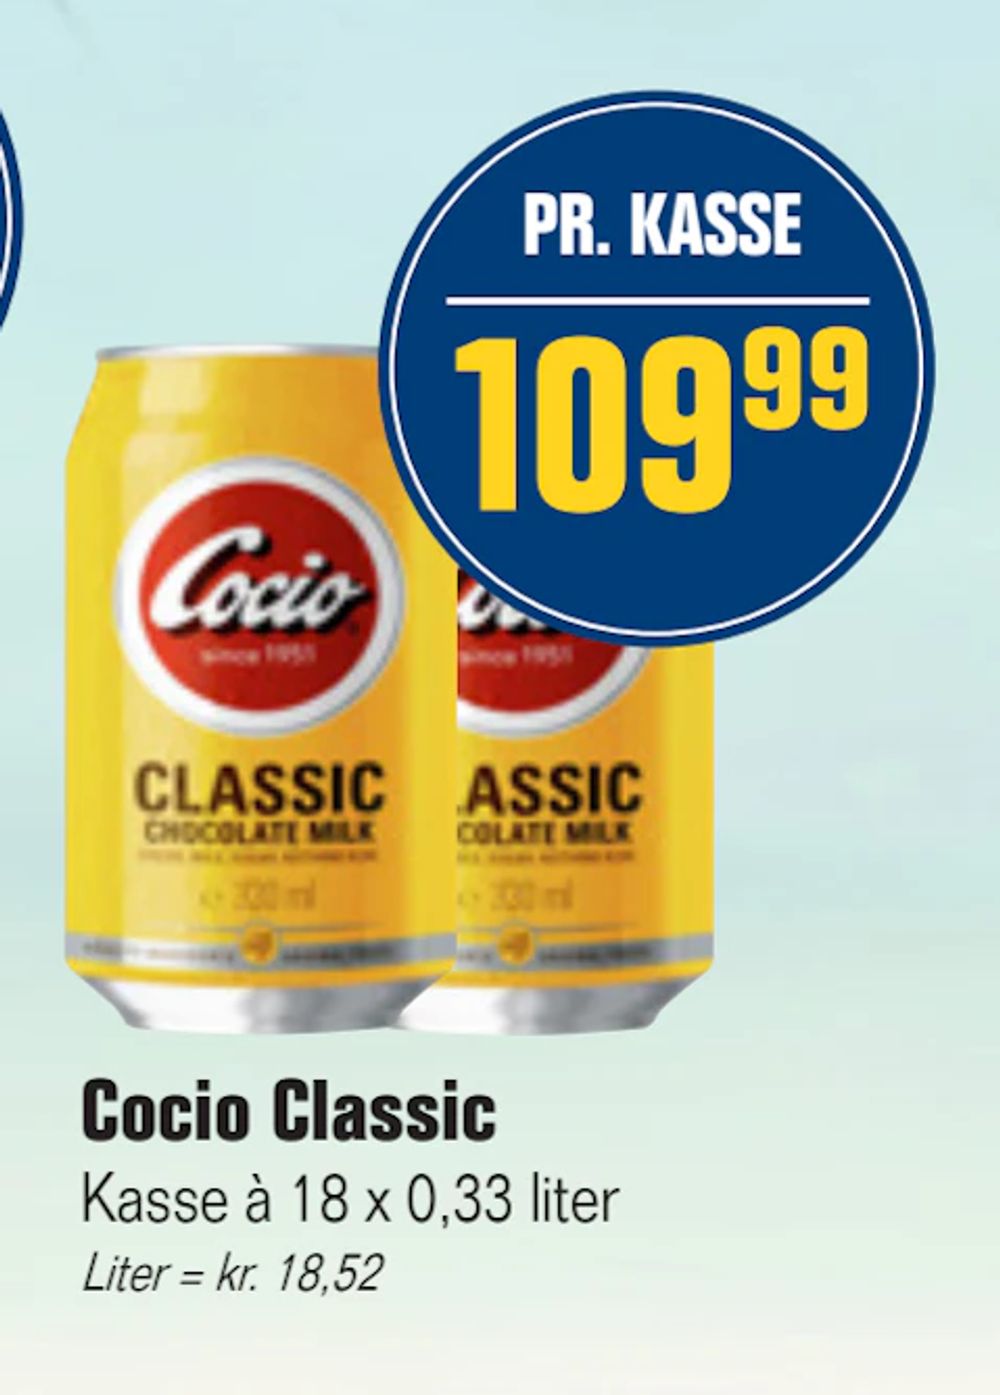 Tilbud på Cocio Classic fra Otto Duborg til 109,99 kr.